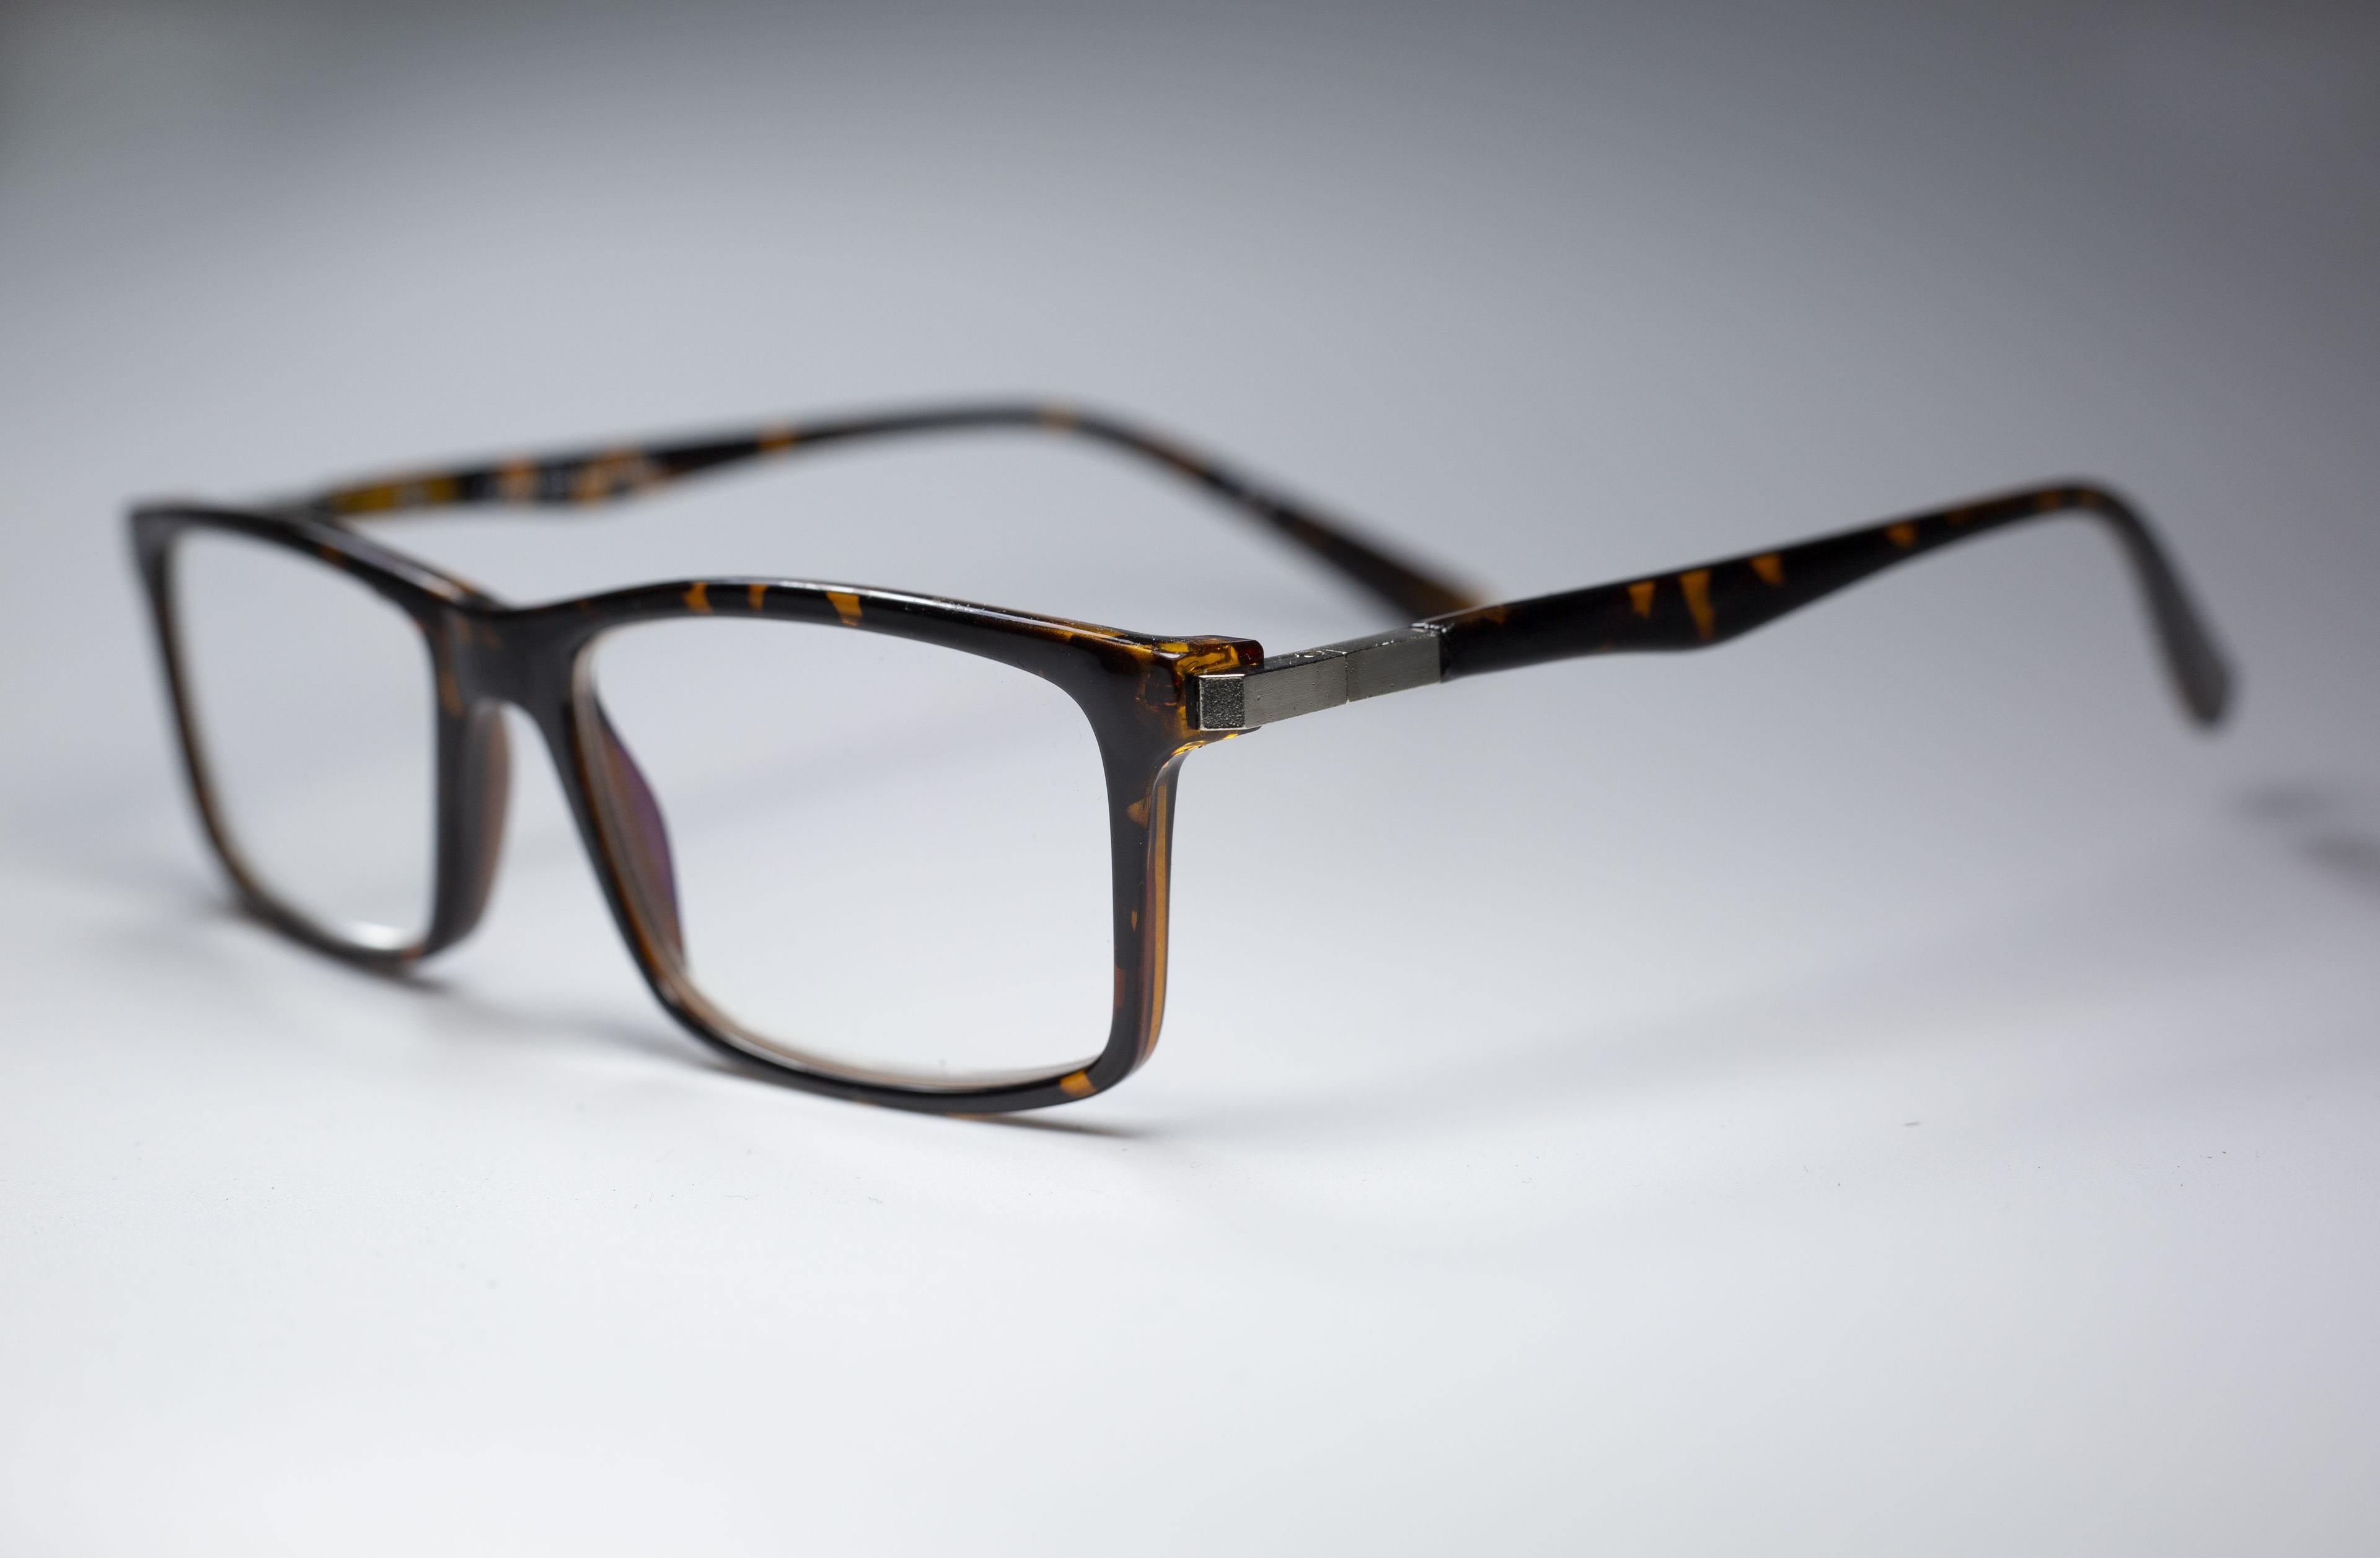 Стильные готовые очки для зрения с диоптриями /Очки для чтения, очки для зрения  женские/мужские, коричневый/черепаховый цвет, корригирующие, антикомпьютерные/